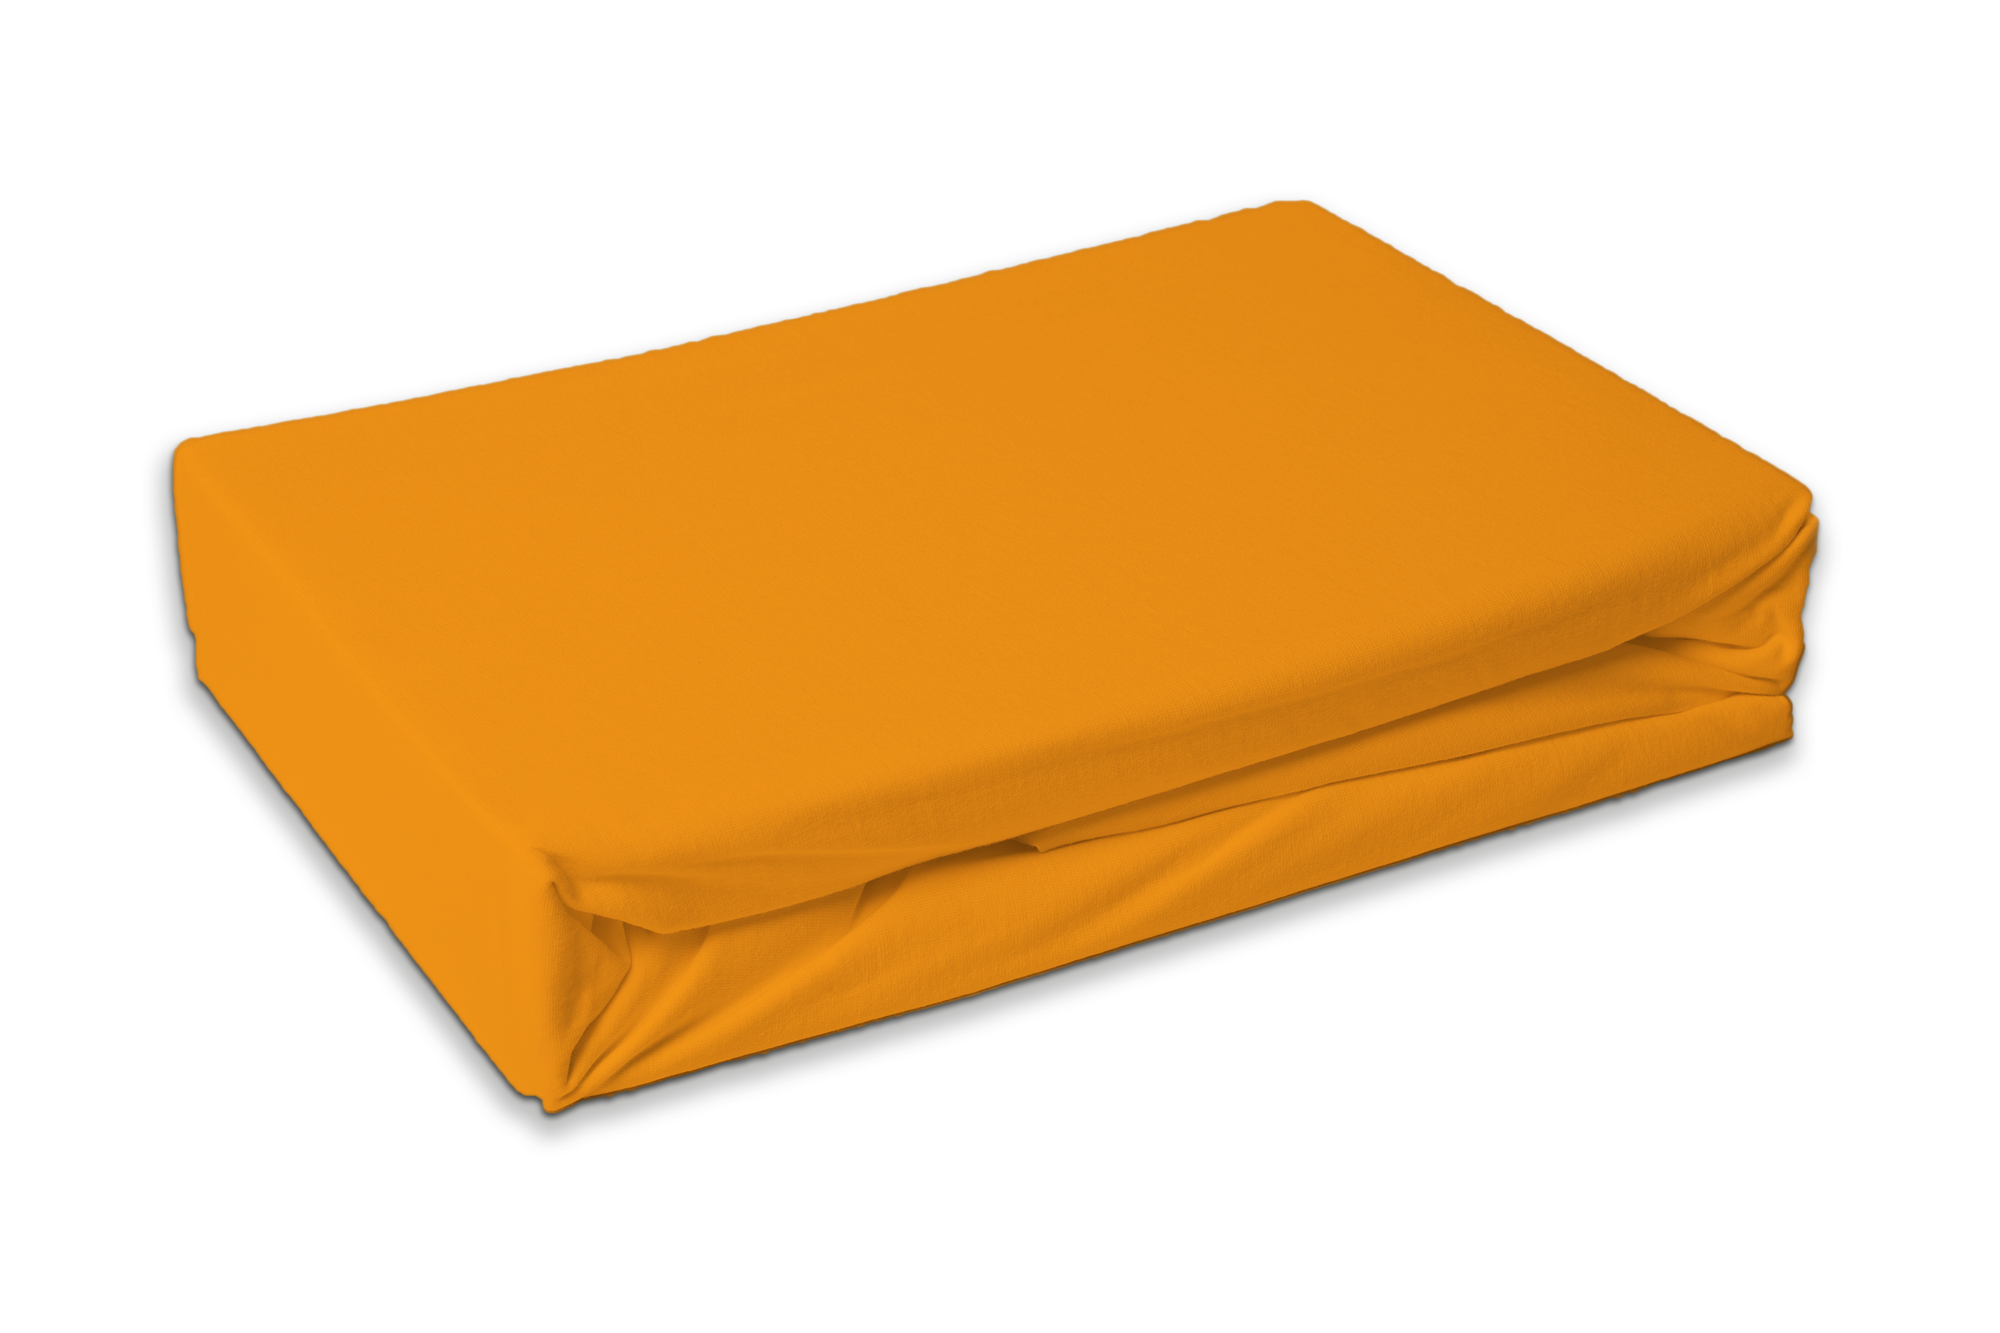 Tweepersoons badstof hoeslaken 180 x 200 cm - Oranje/ Geel